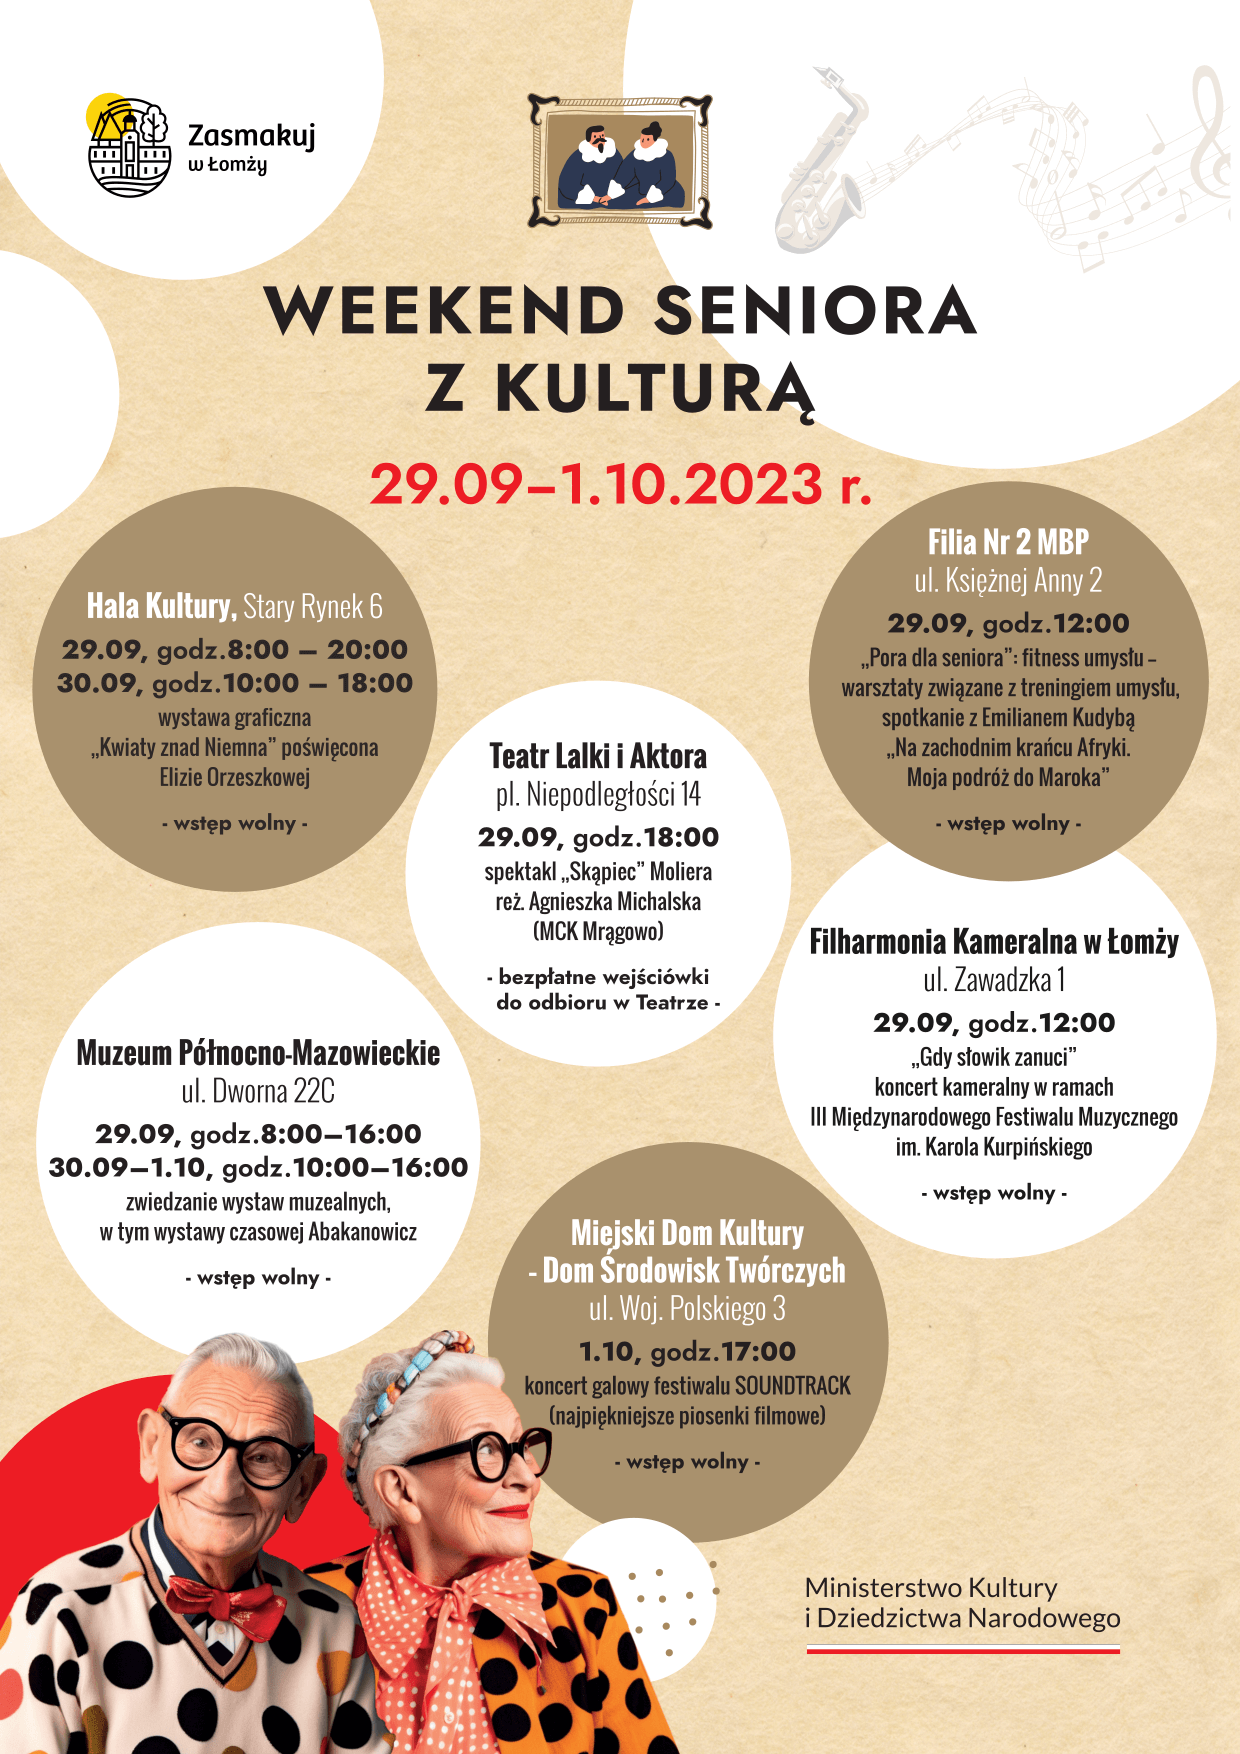 Weekend seniora z kultura 2023 - plakat A4.png